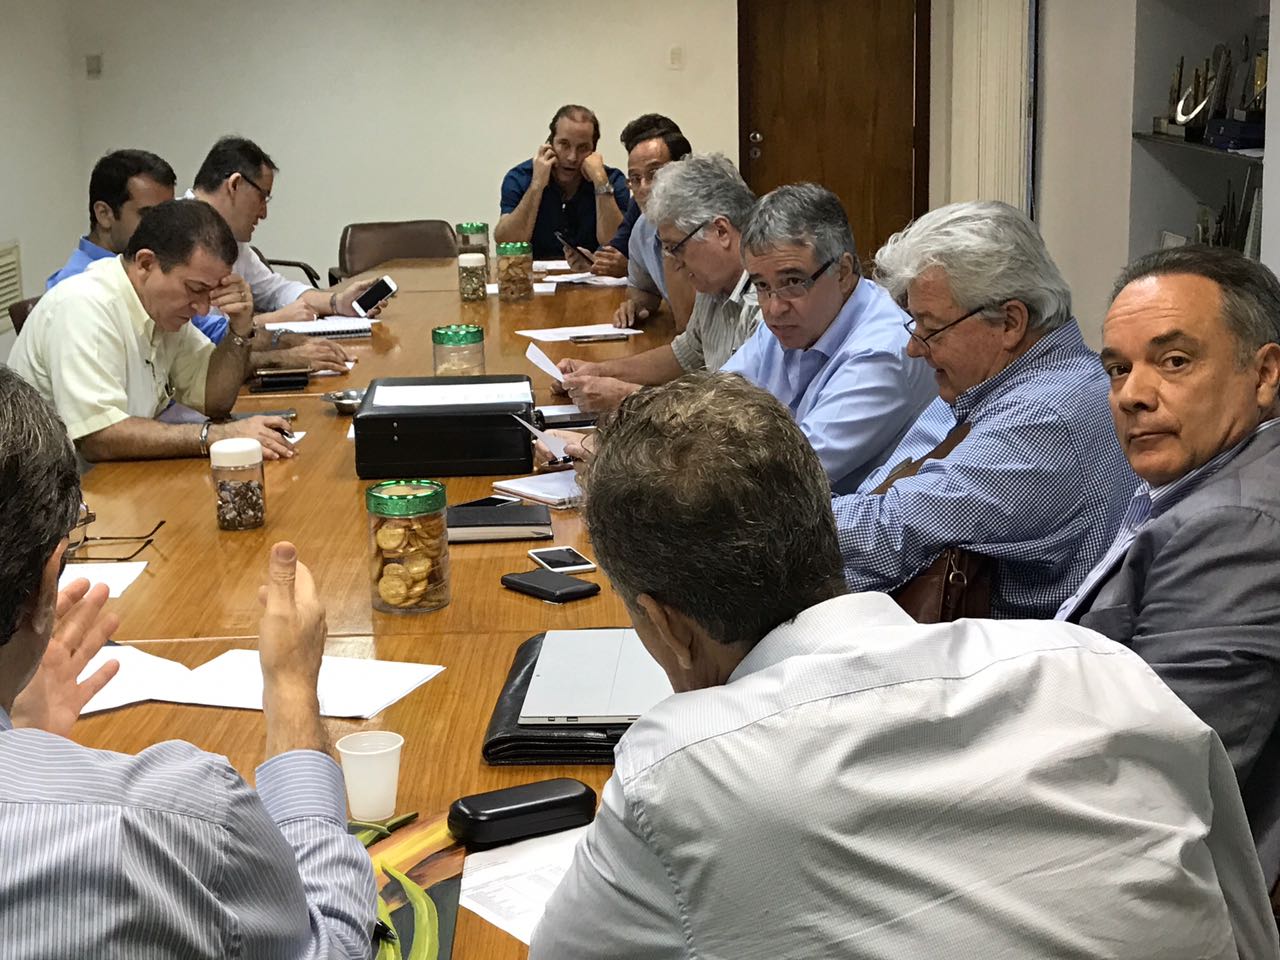 
Na sede do SINDAÇÚCAR/PE, Renato Cunha presidindo reunião sobre exportações de açúcar, com as presenças de associados, dia 18/setembro/2017
